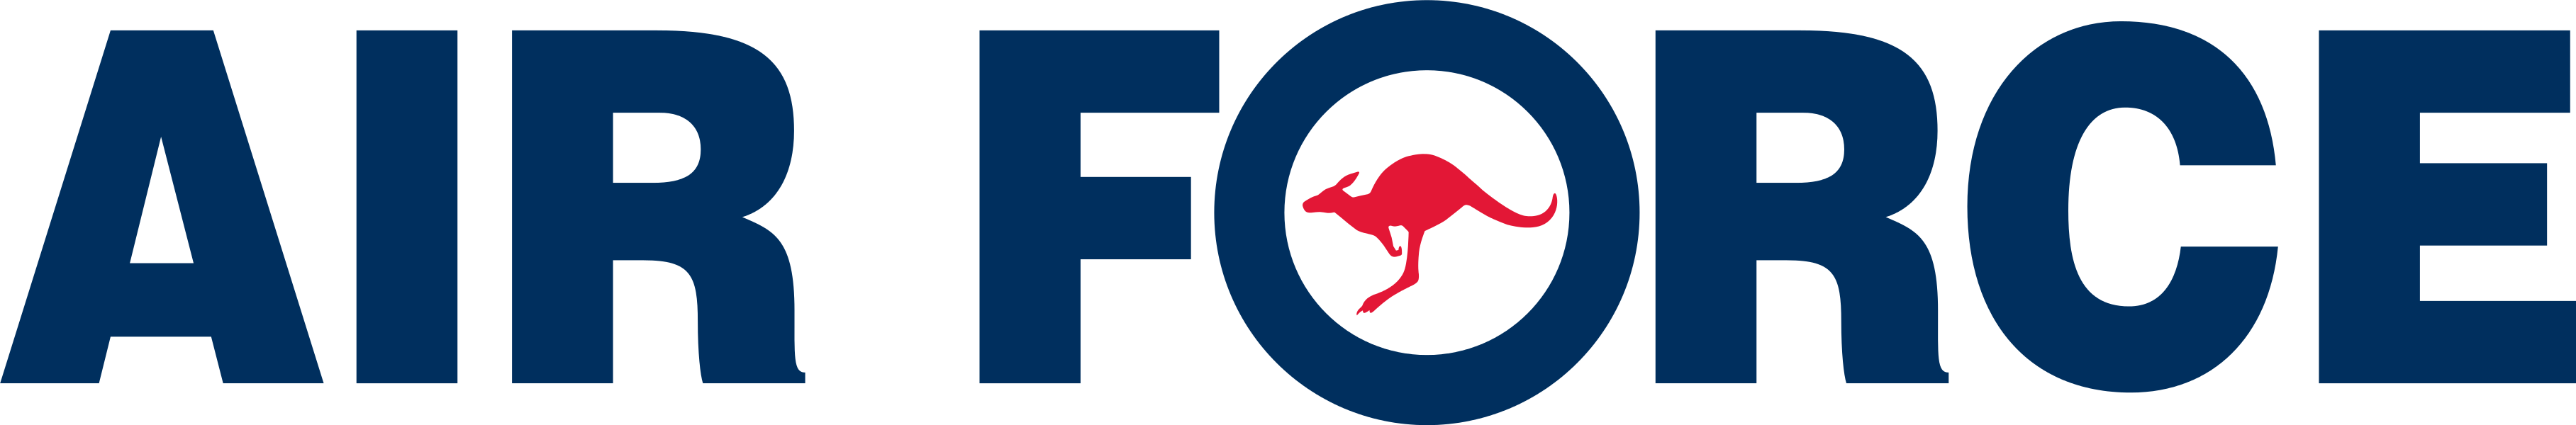 Australian Air Force